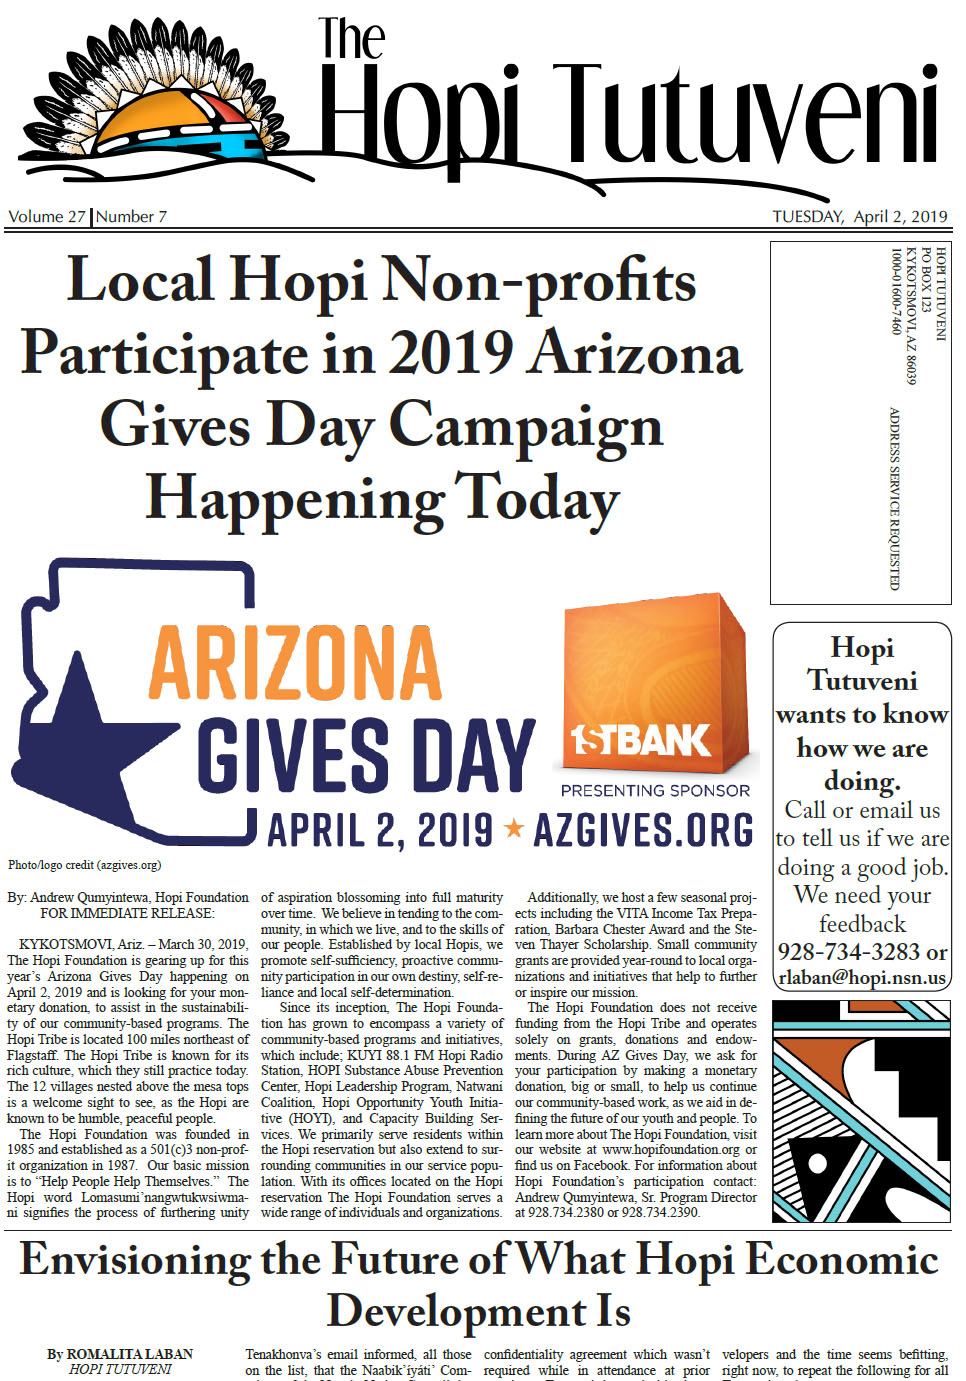 April 2, 2019 Issue #7 Hopi Tutuveni - The Hopi Tribe.